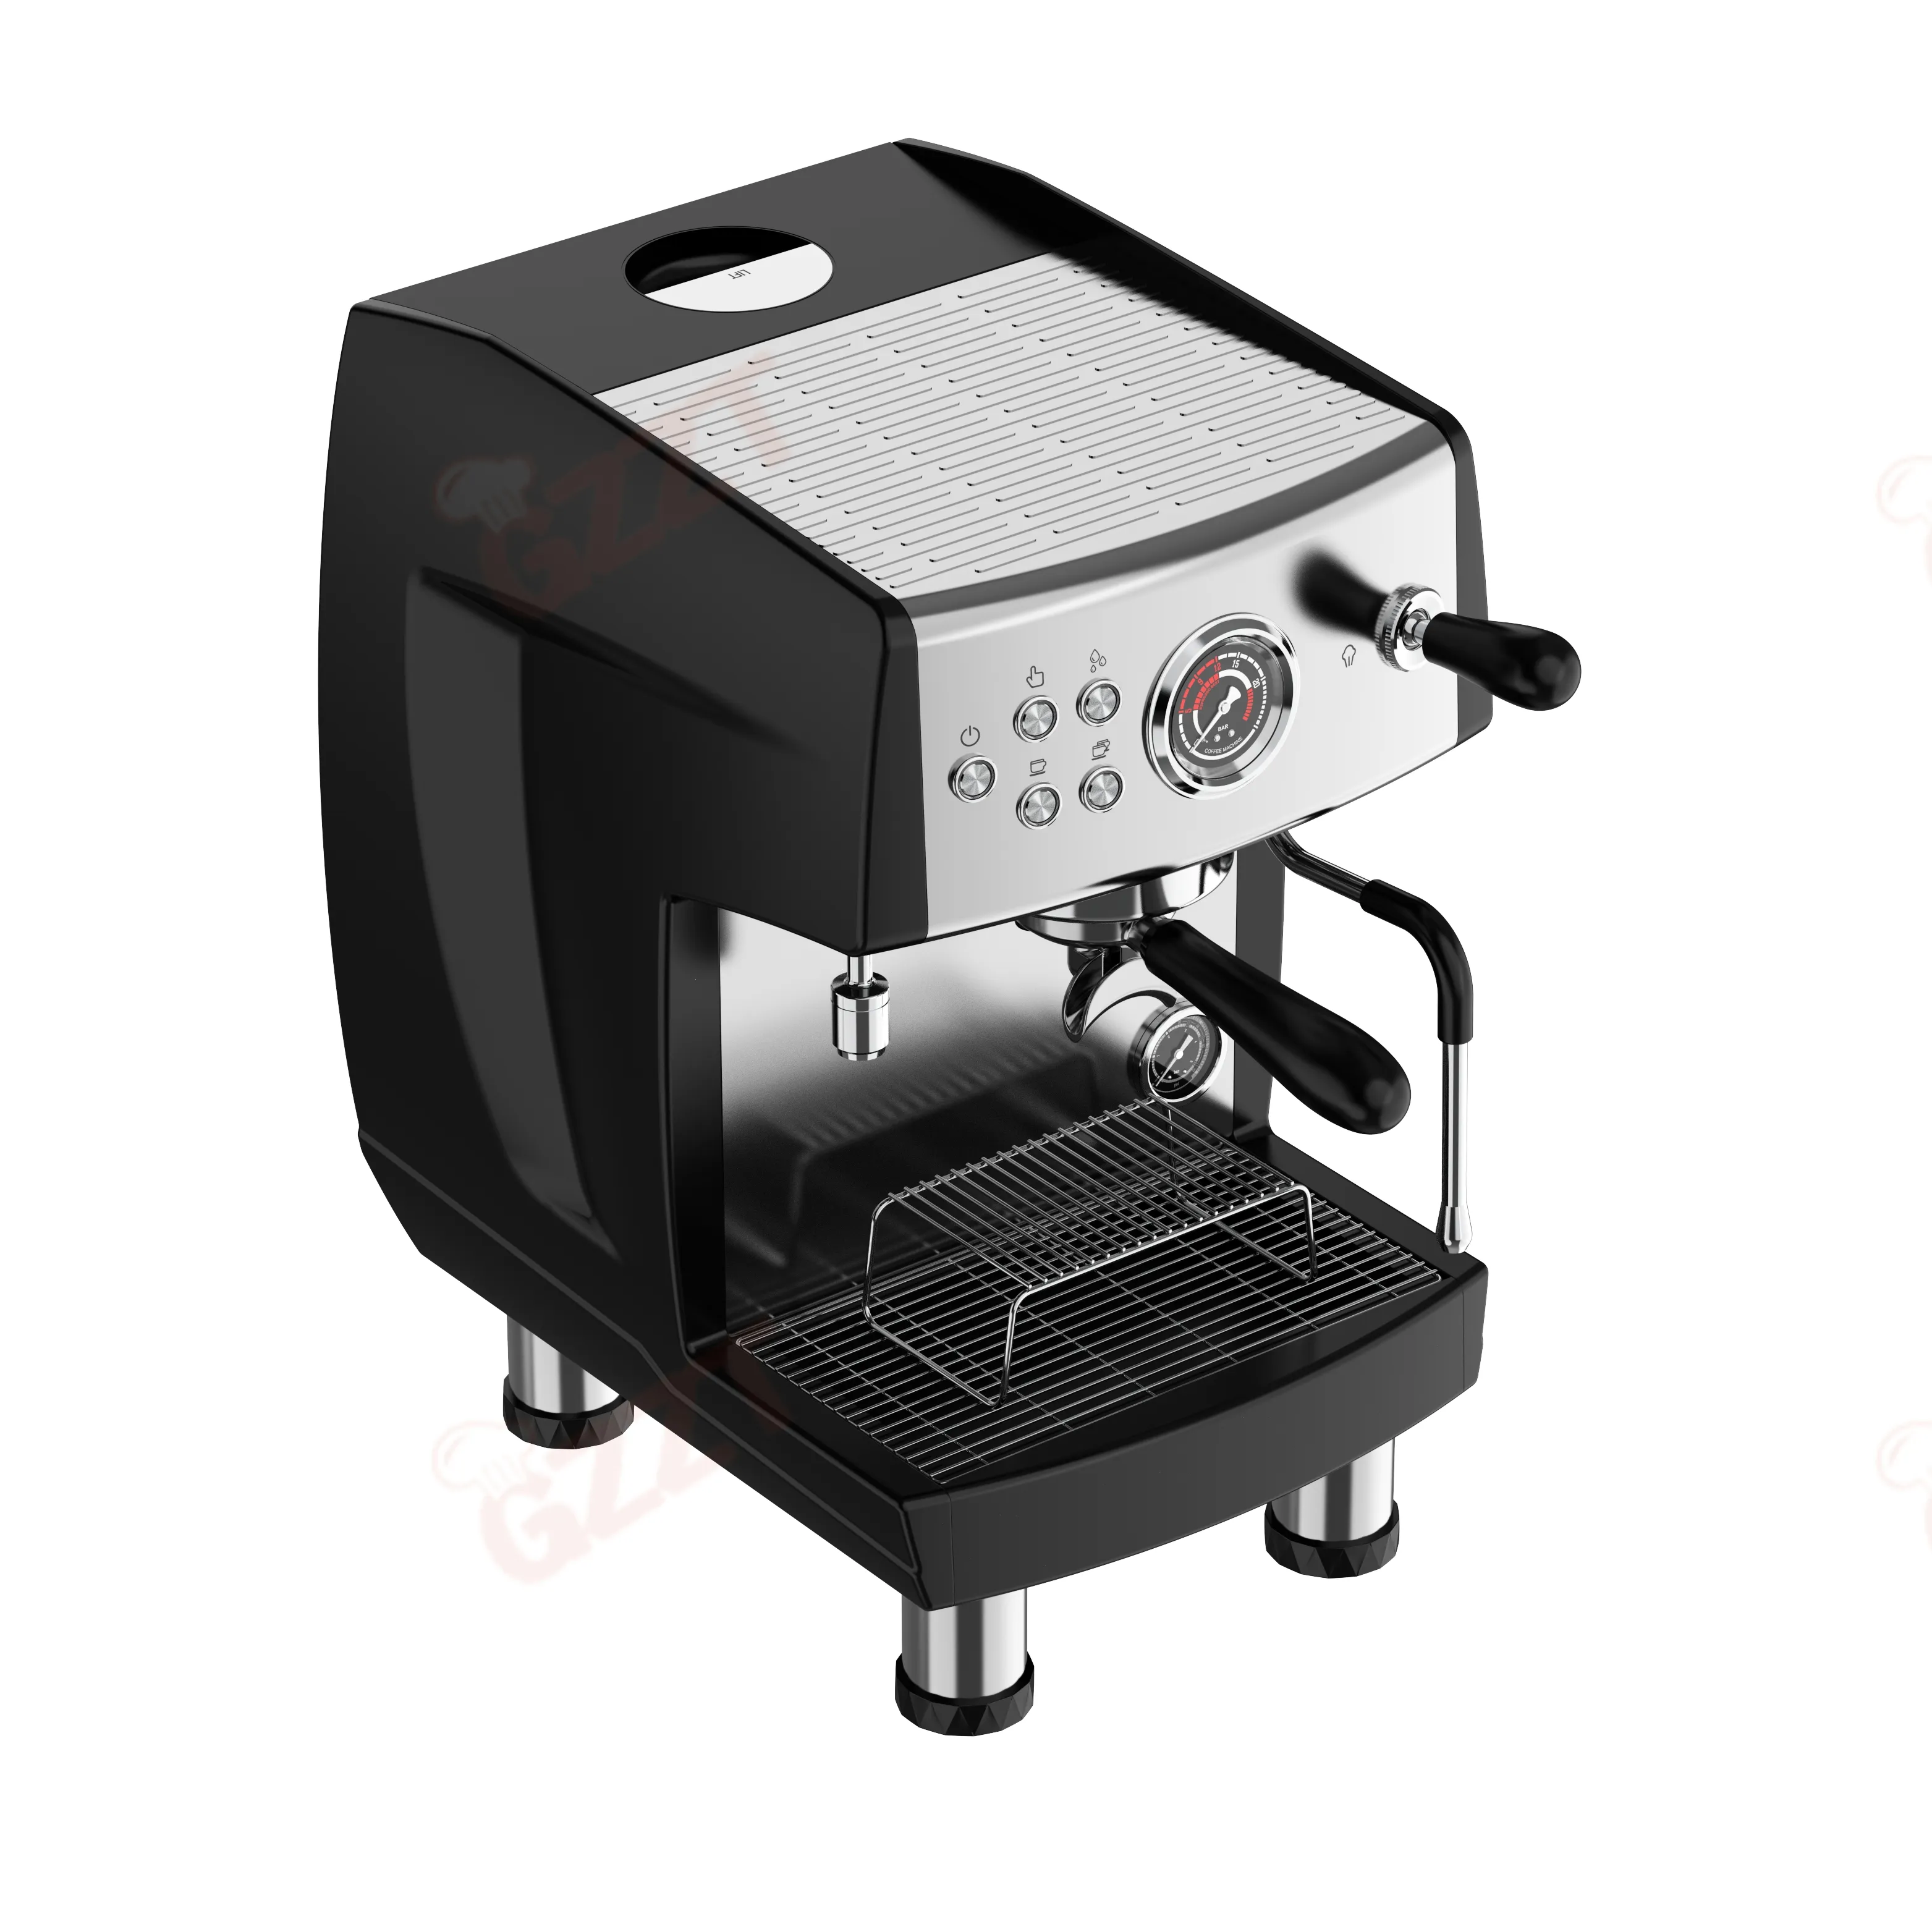 ماكينة صنع قهوة الإسبرسو شبه الأوتوماتيكية التجارية Cm808 مع 3 أنظمة تدفئة مستوردة من ULKA ماكينة صنع قهوة تجارية بمضخة أحادية المجموعات